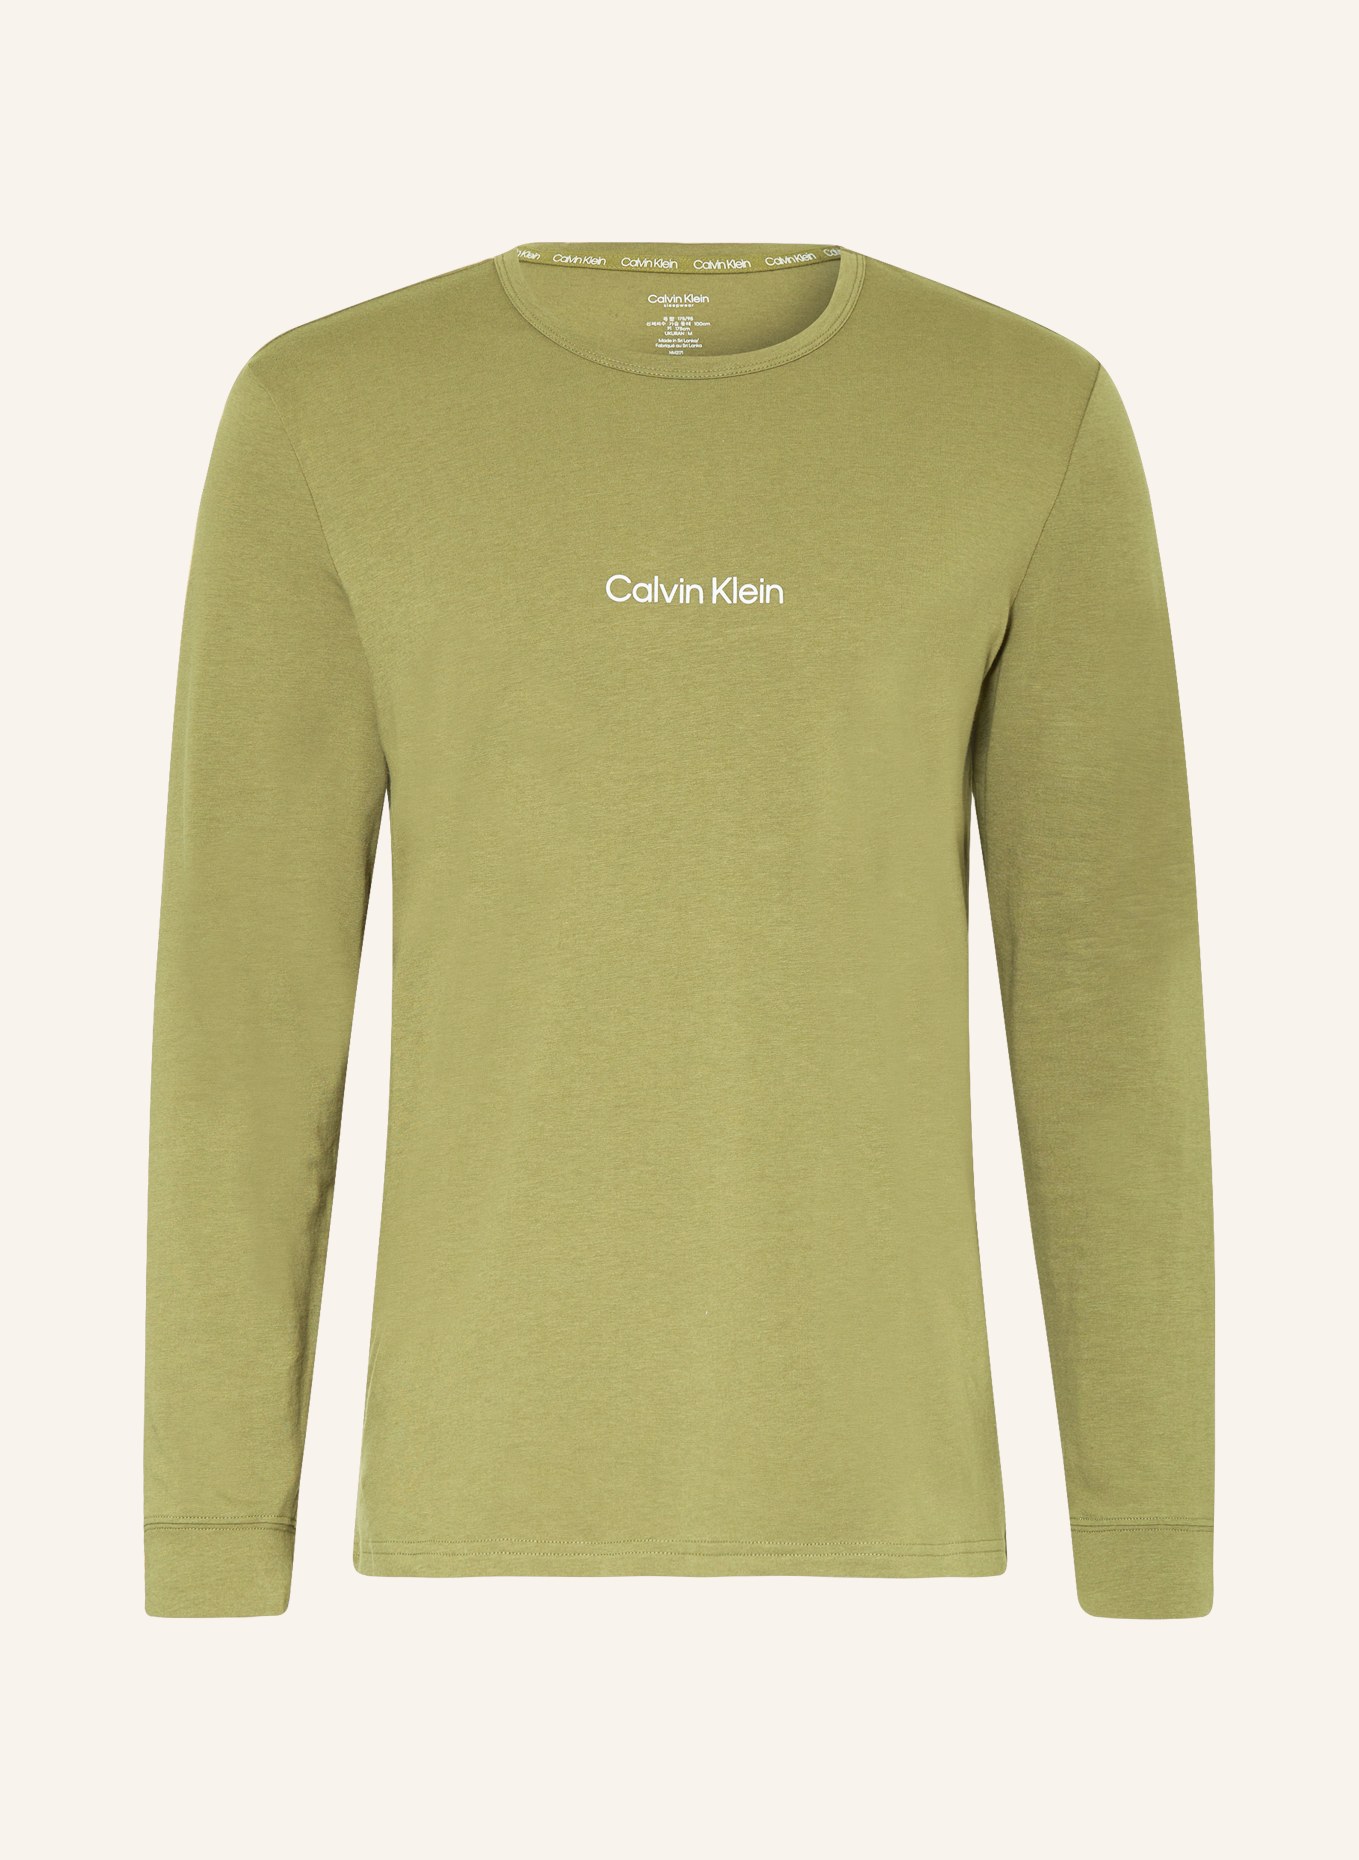 Calvin Klein Lounge-Shirt MODERN STRUCTURE, Farbe: OLIV (Bild 1)